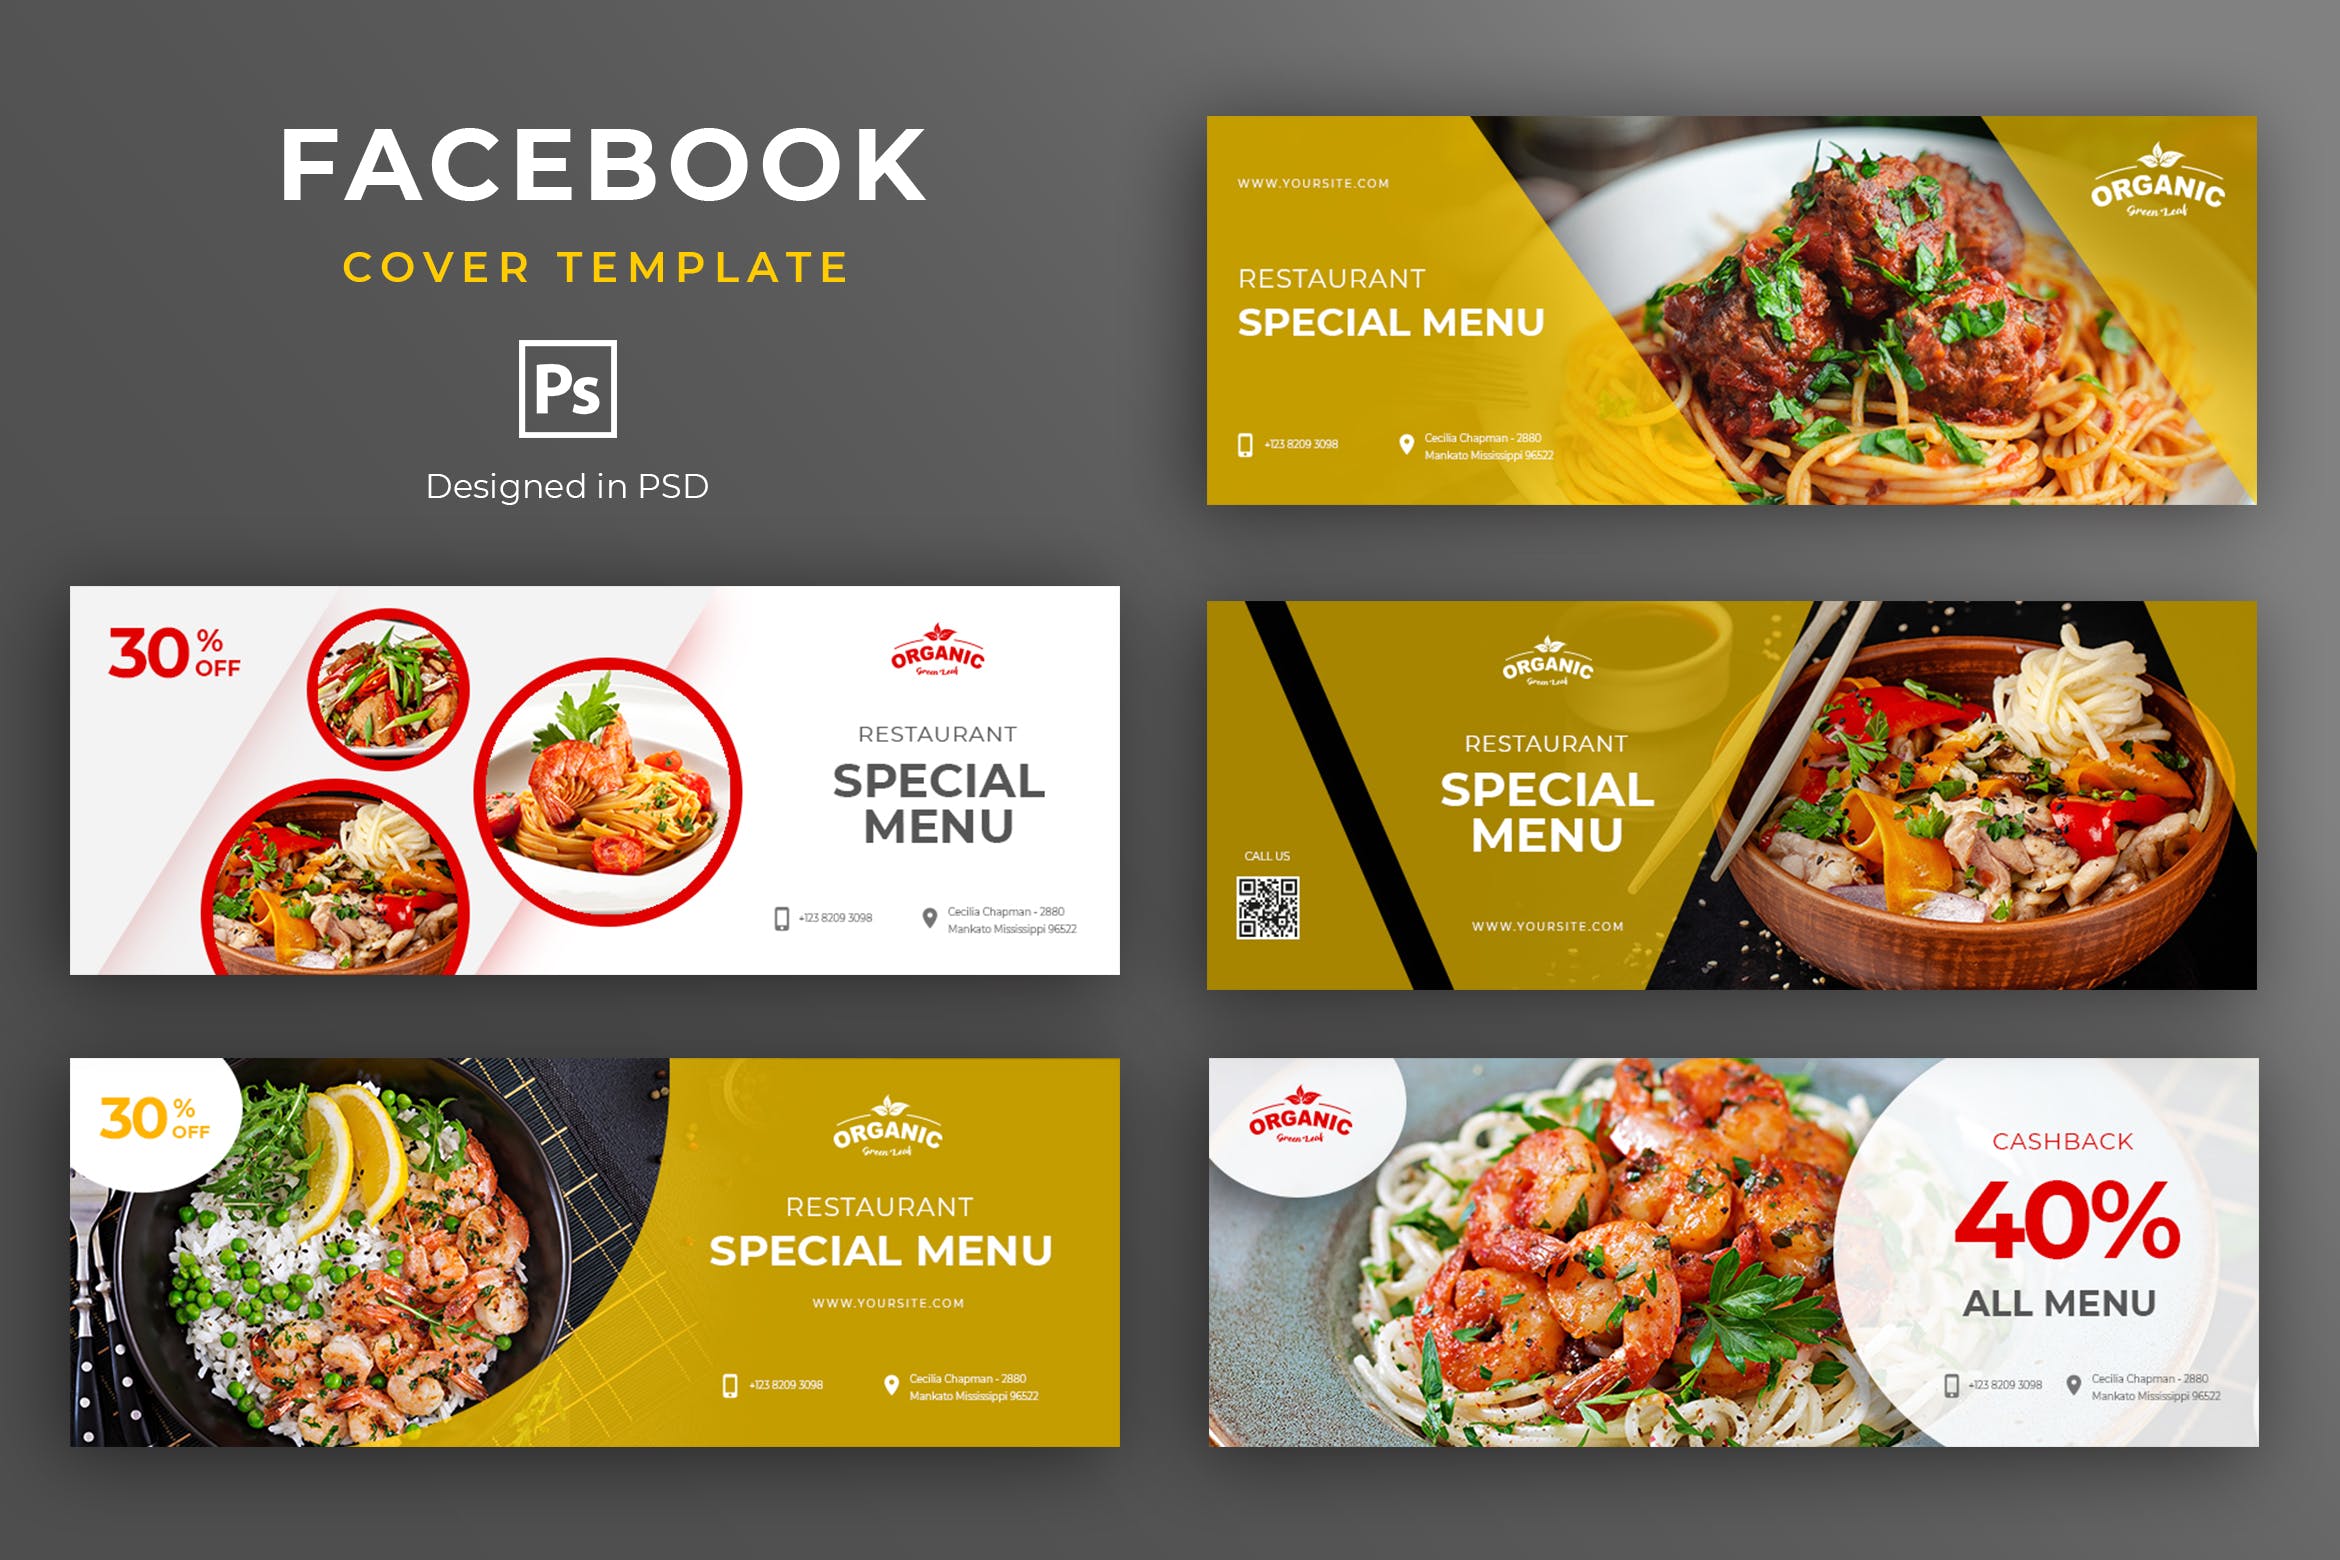 餐厅美食品牌推广Facebook主页封面设计模板16设计网精选 Food and Resto Facebook Cover Template插图